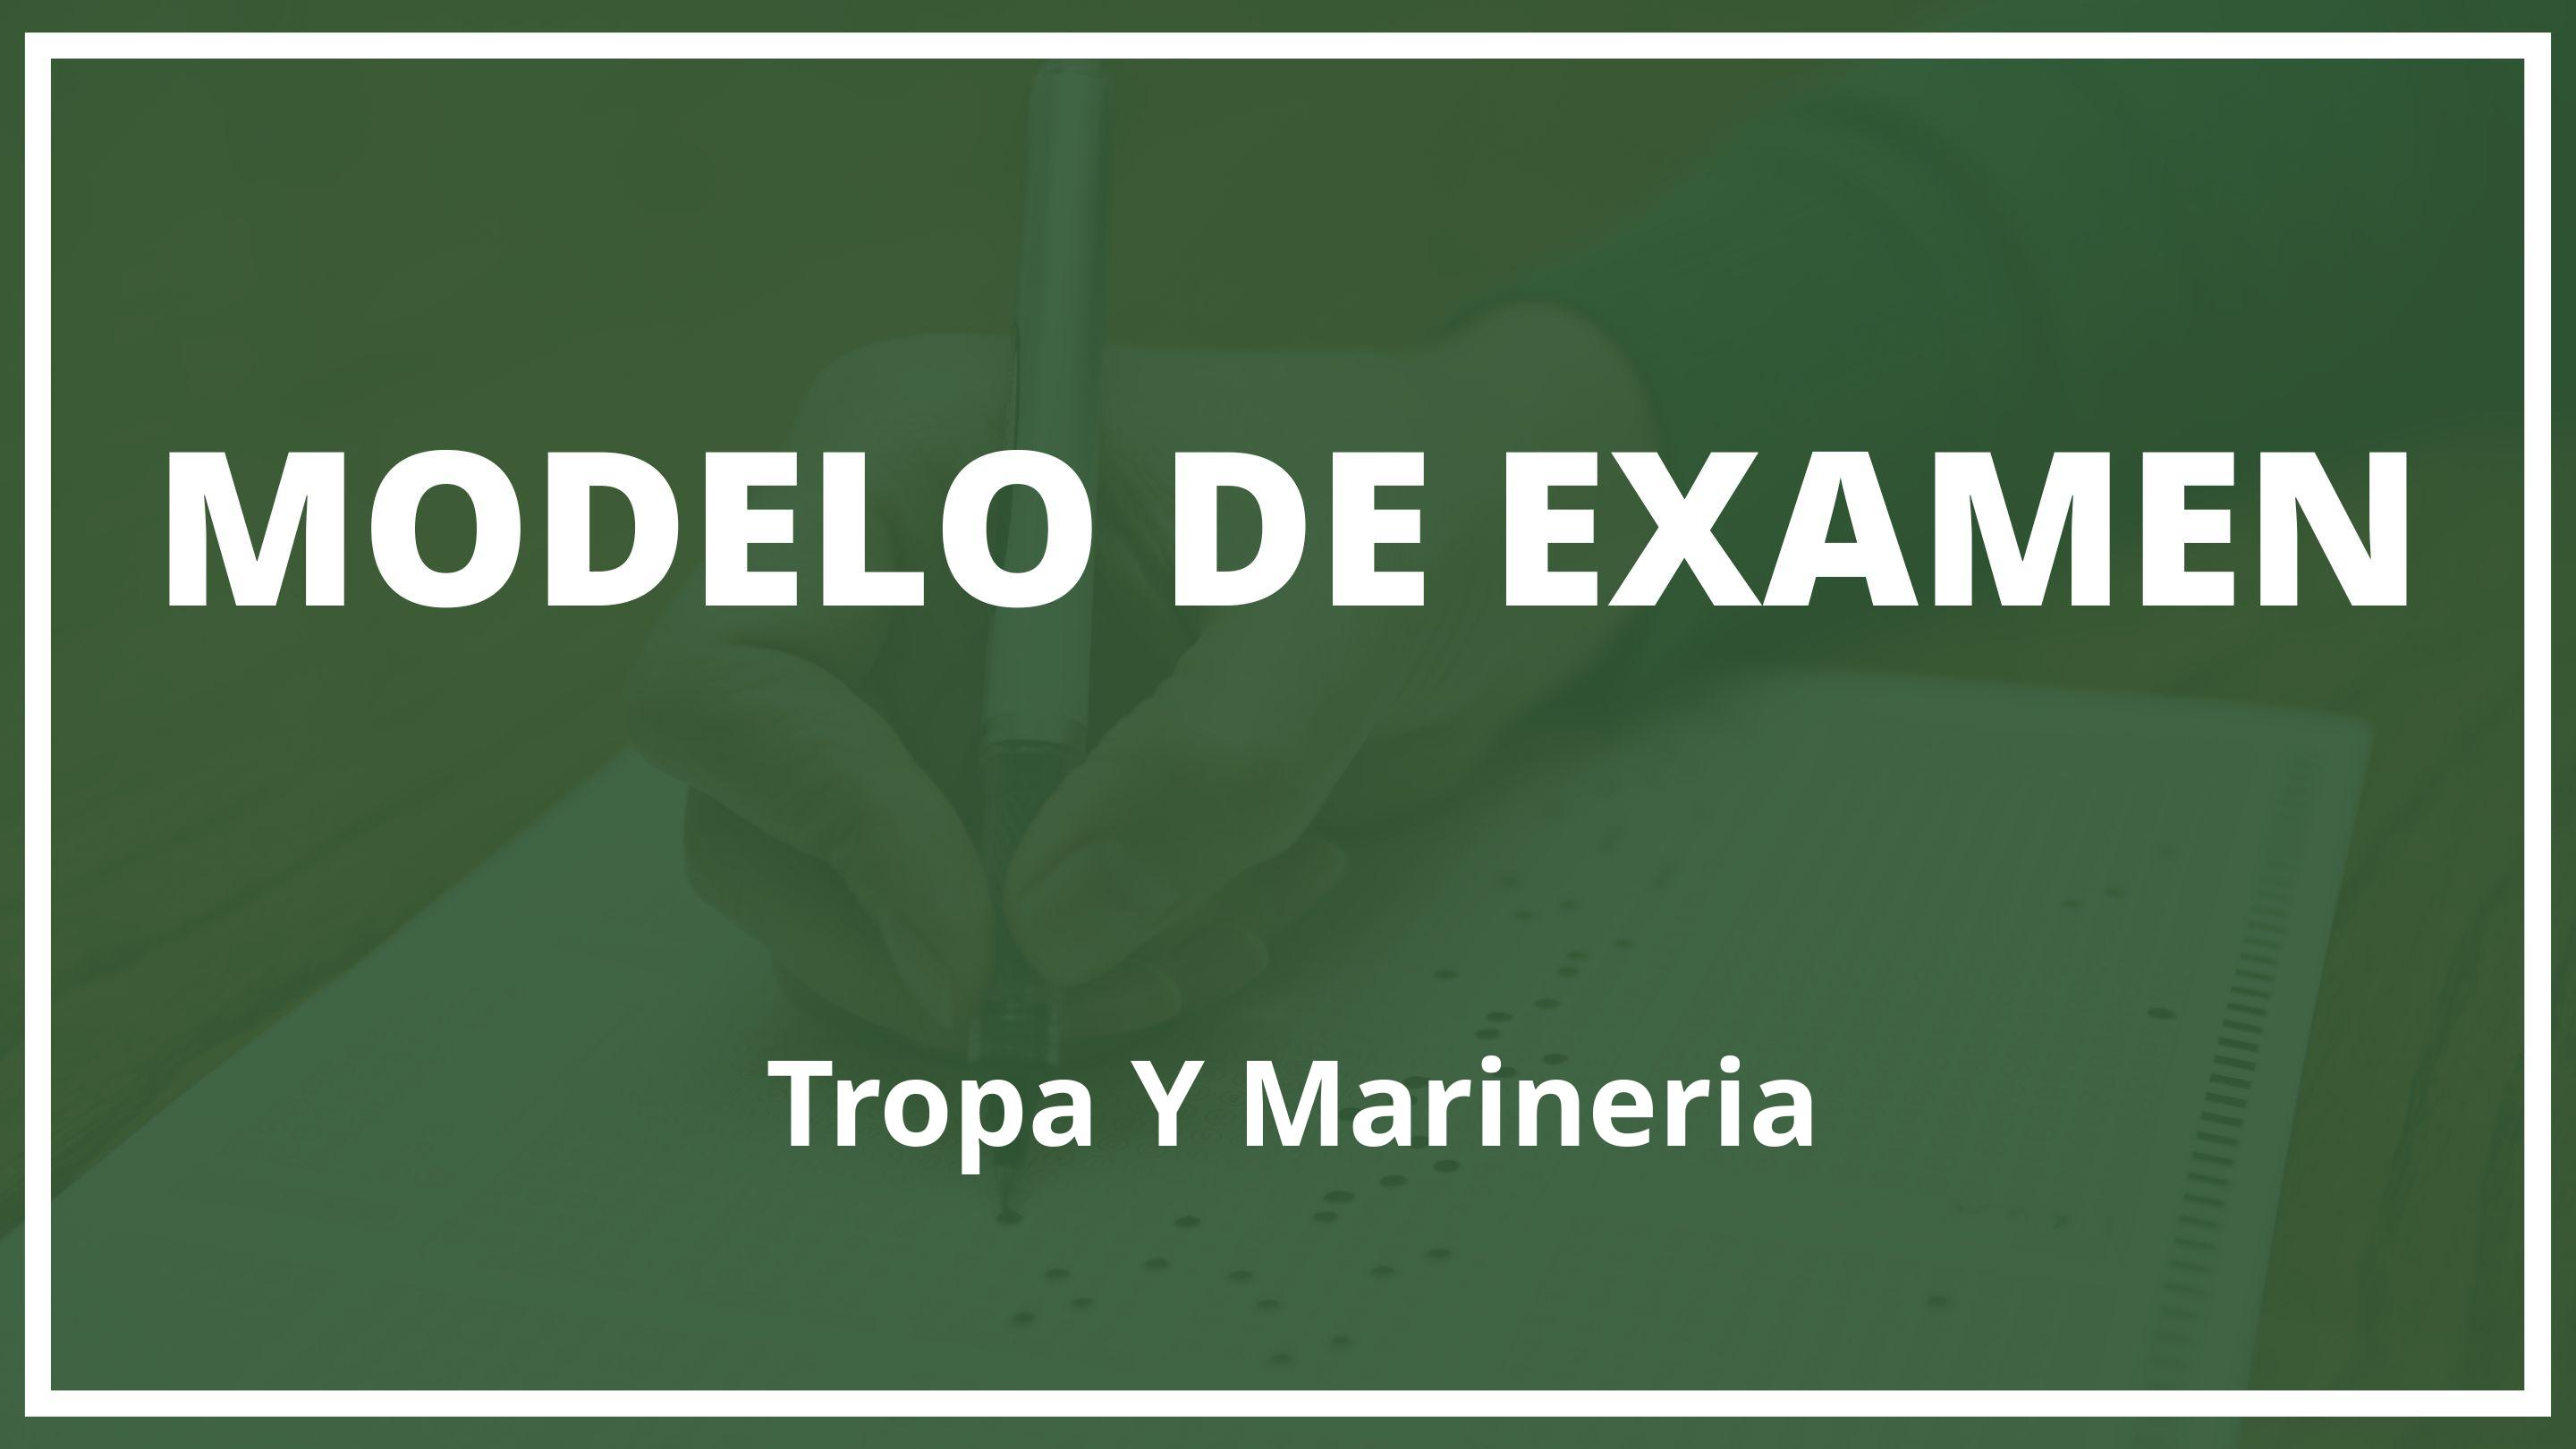 Examen Tropa Y Marineria